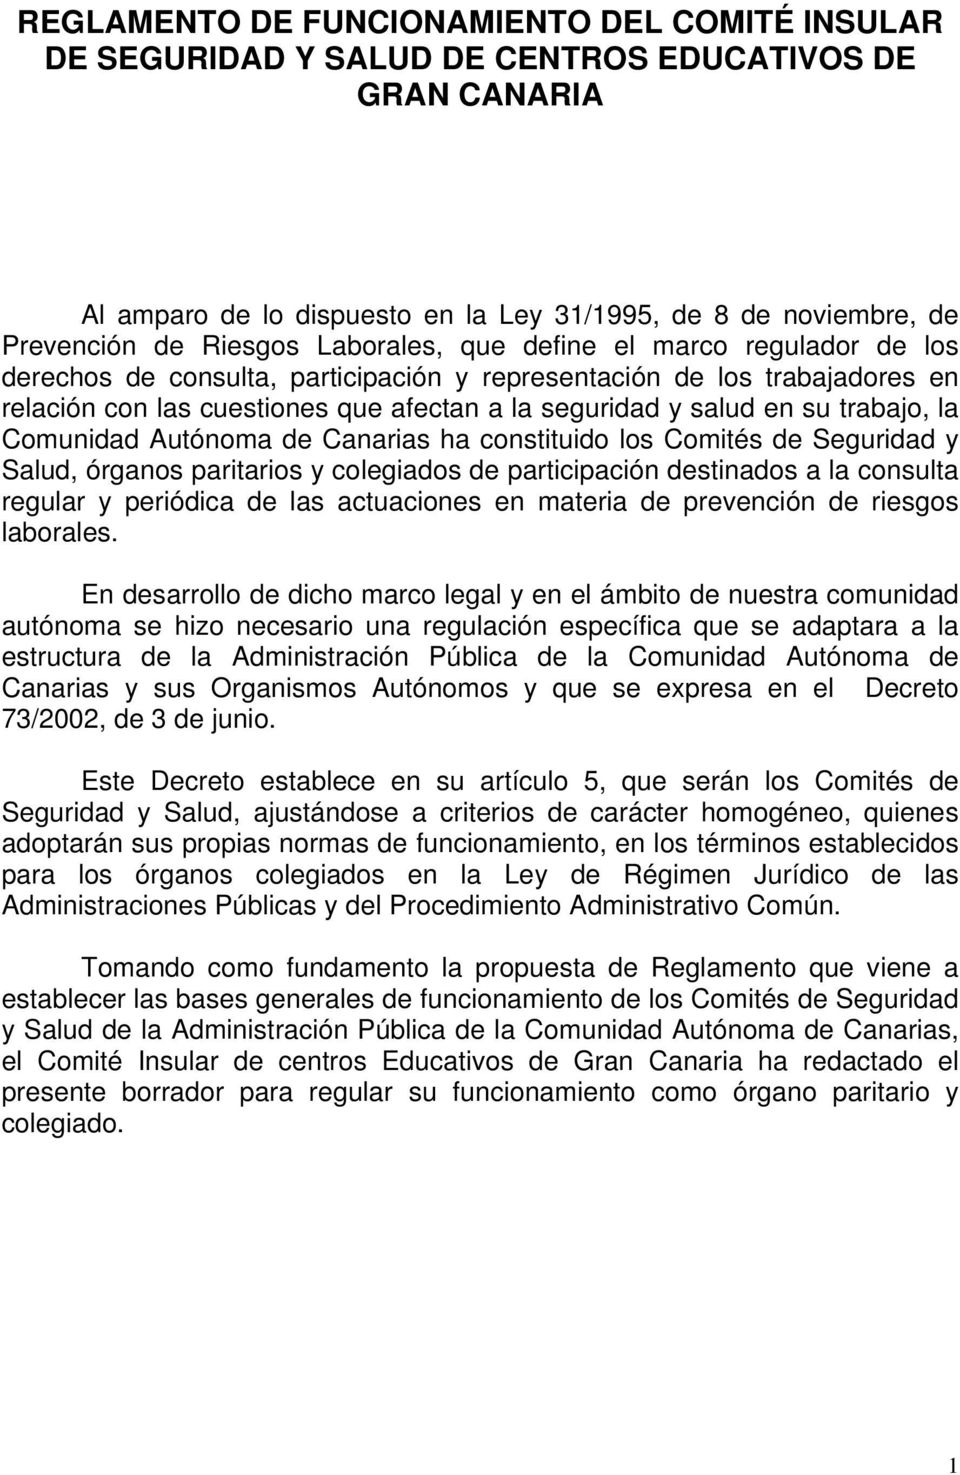 trabajo, la Comunidad Autónoma de Canarias ha constituido los Comités de Seguridad y Salud, órganos paritarios y colegiados de participación destinados a la consulta regular y periódica de las